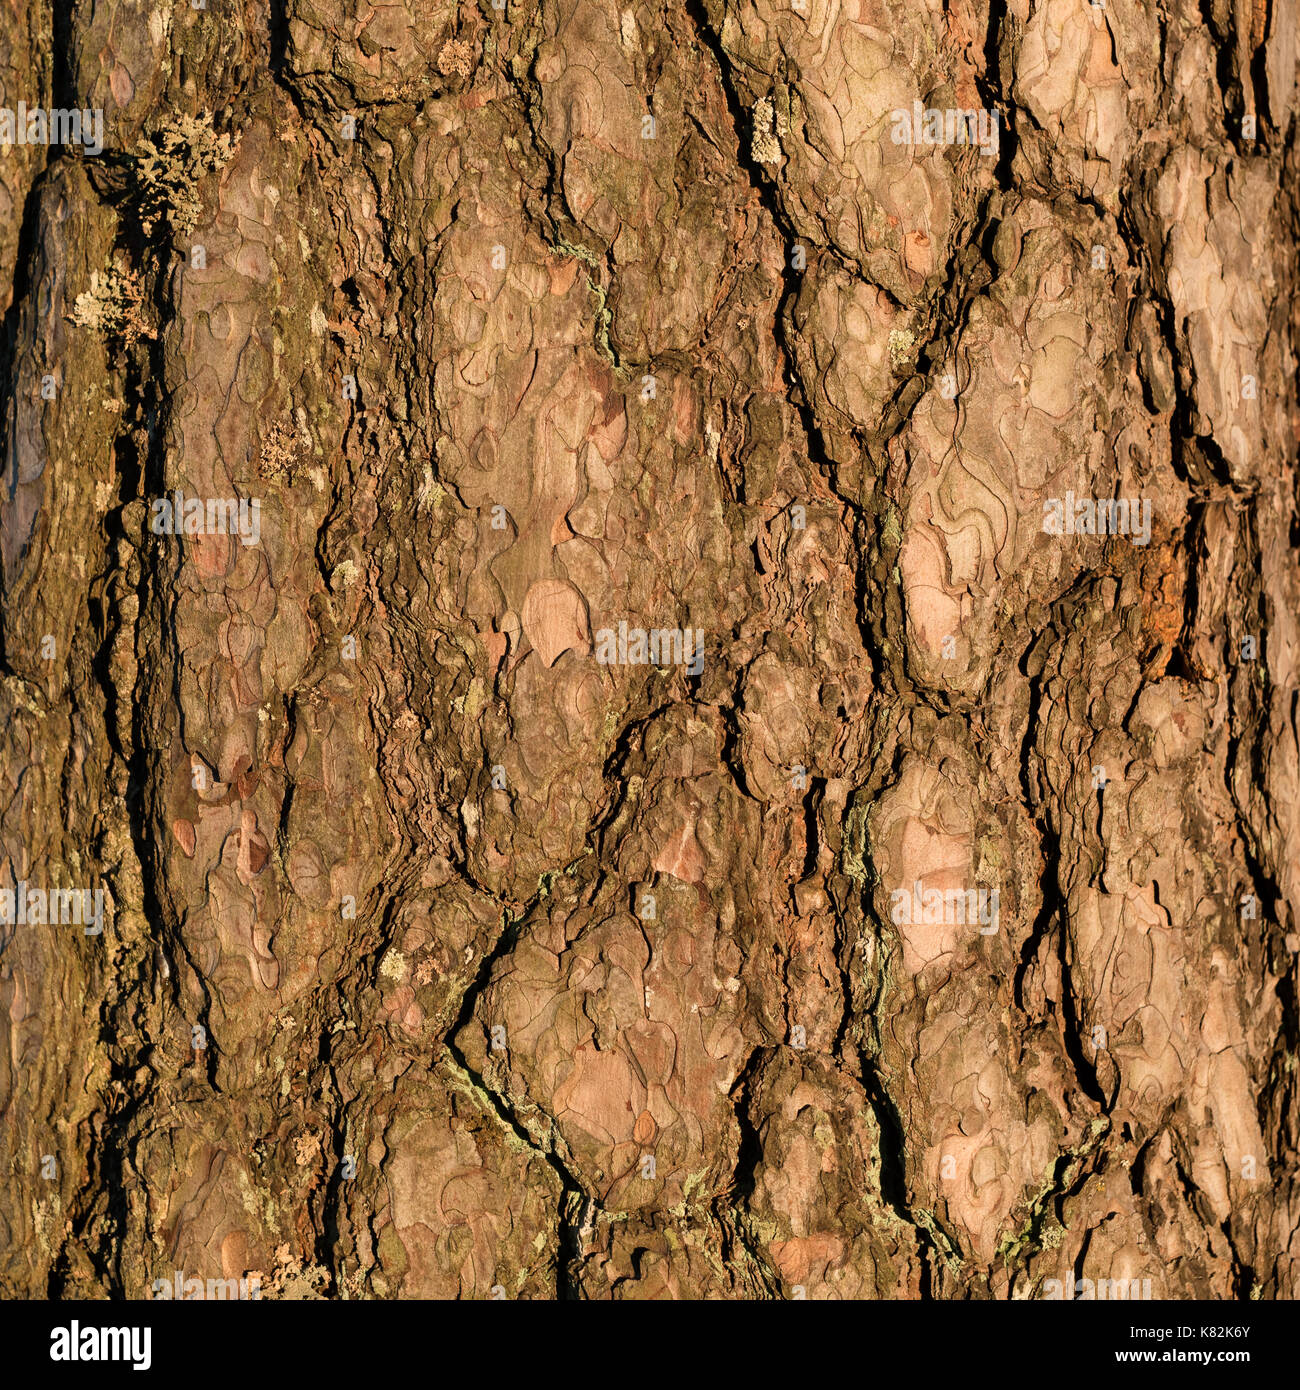 tree bark close-up Stock Photo